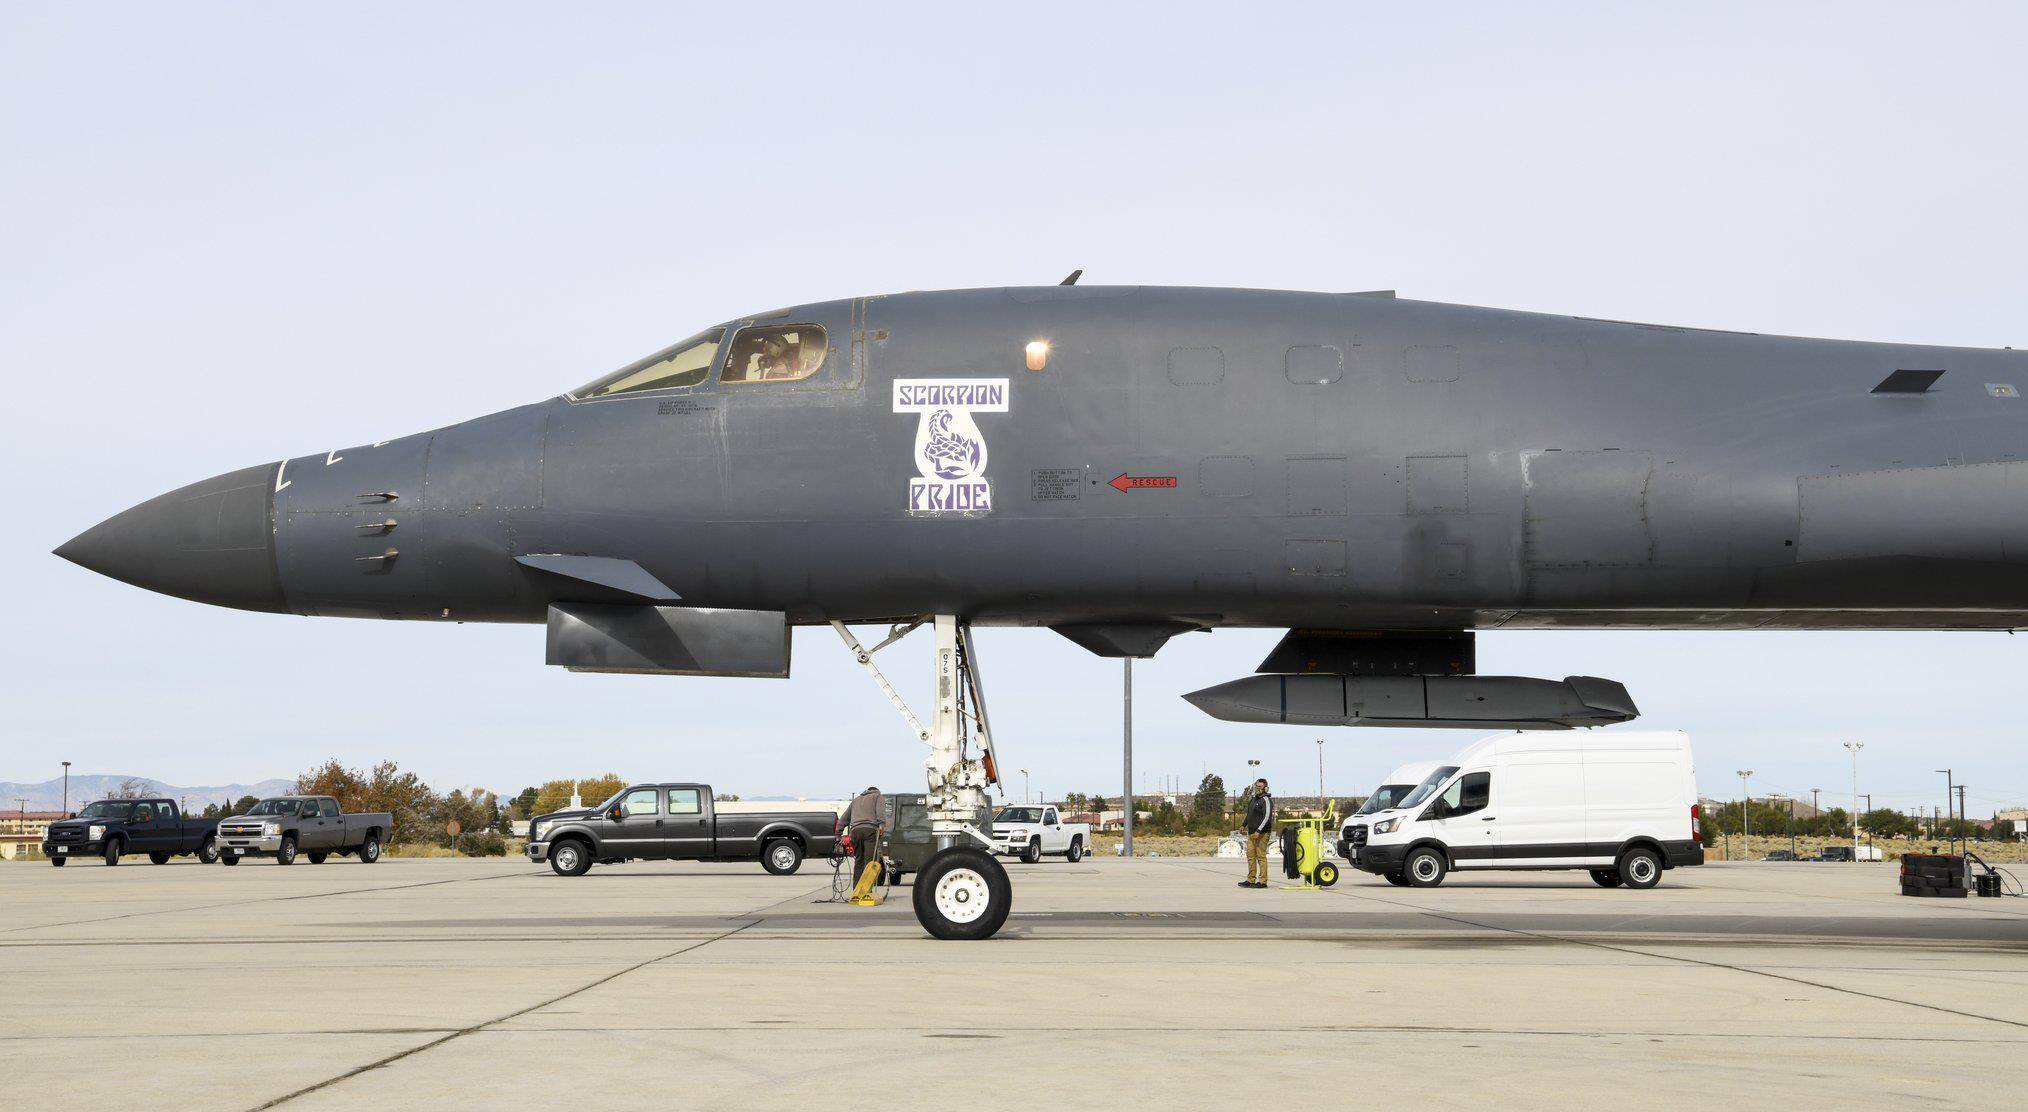 近日美国空军发布了一架b-1b战略轰炸机进行挂弹飞行测试的画面,这款